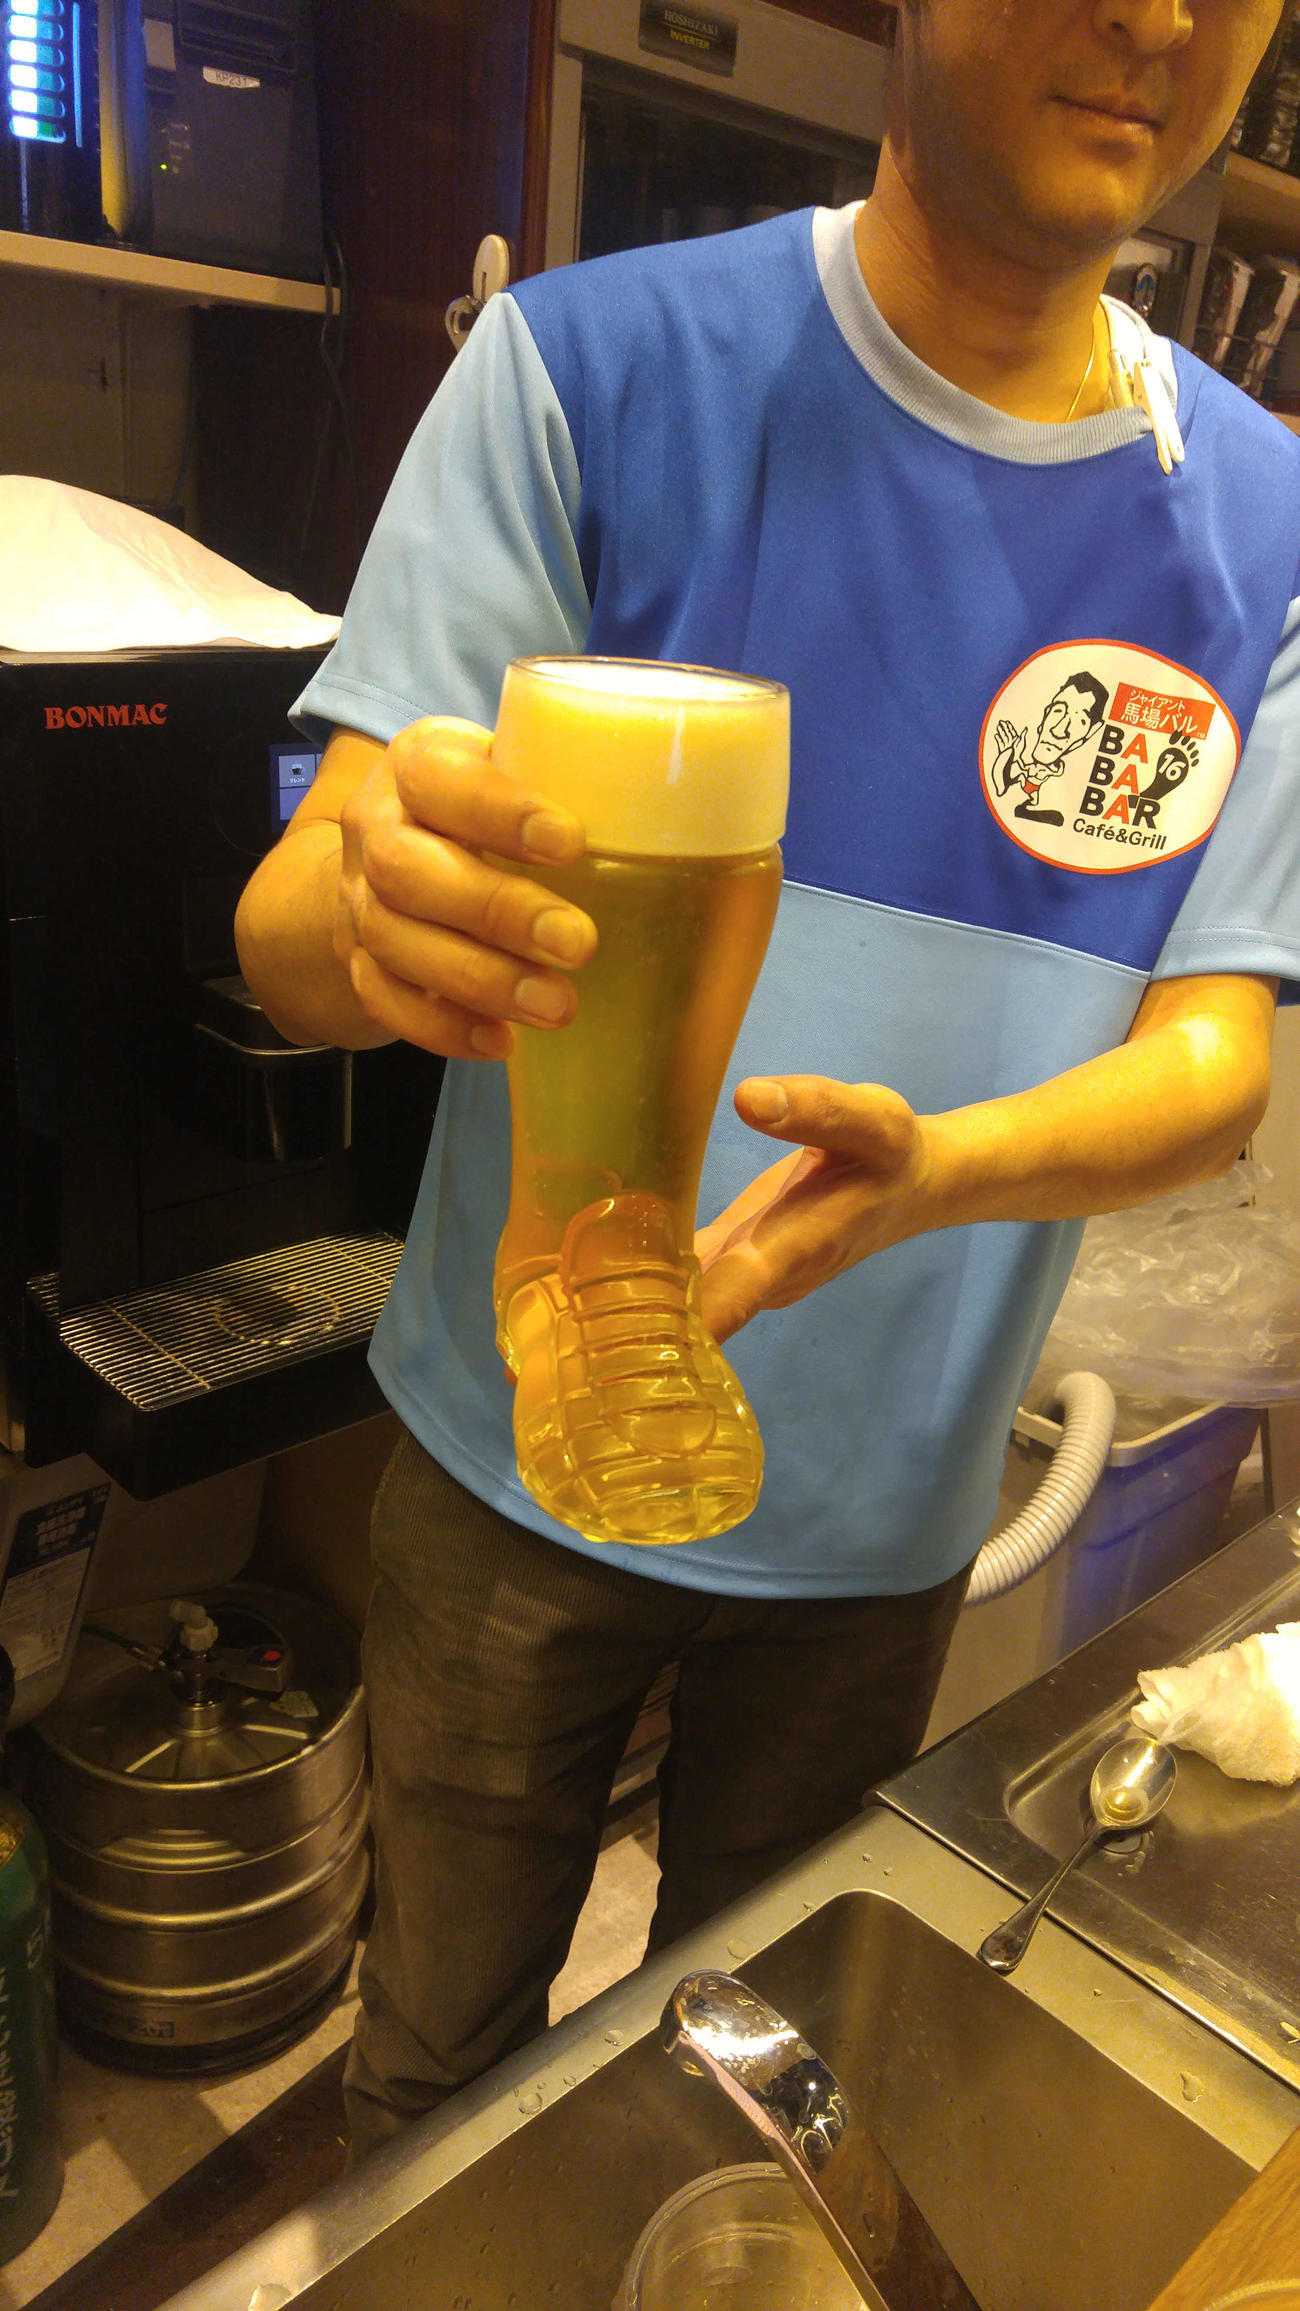 ジャイアント馬場さんの靴をイメージした「ジャイアント馬場バル」のビールグラス